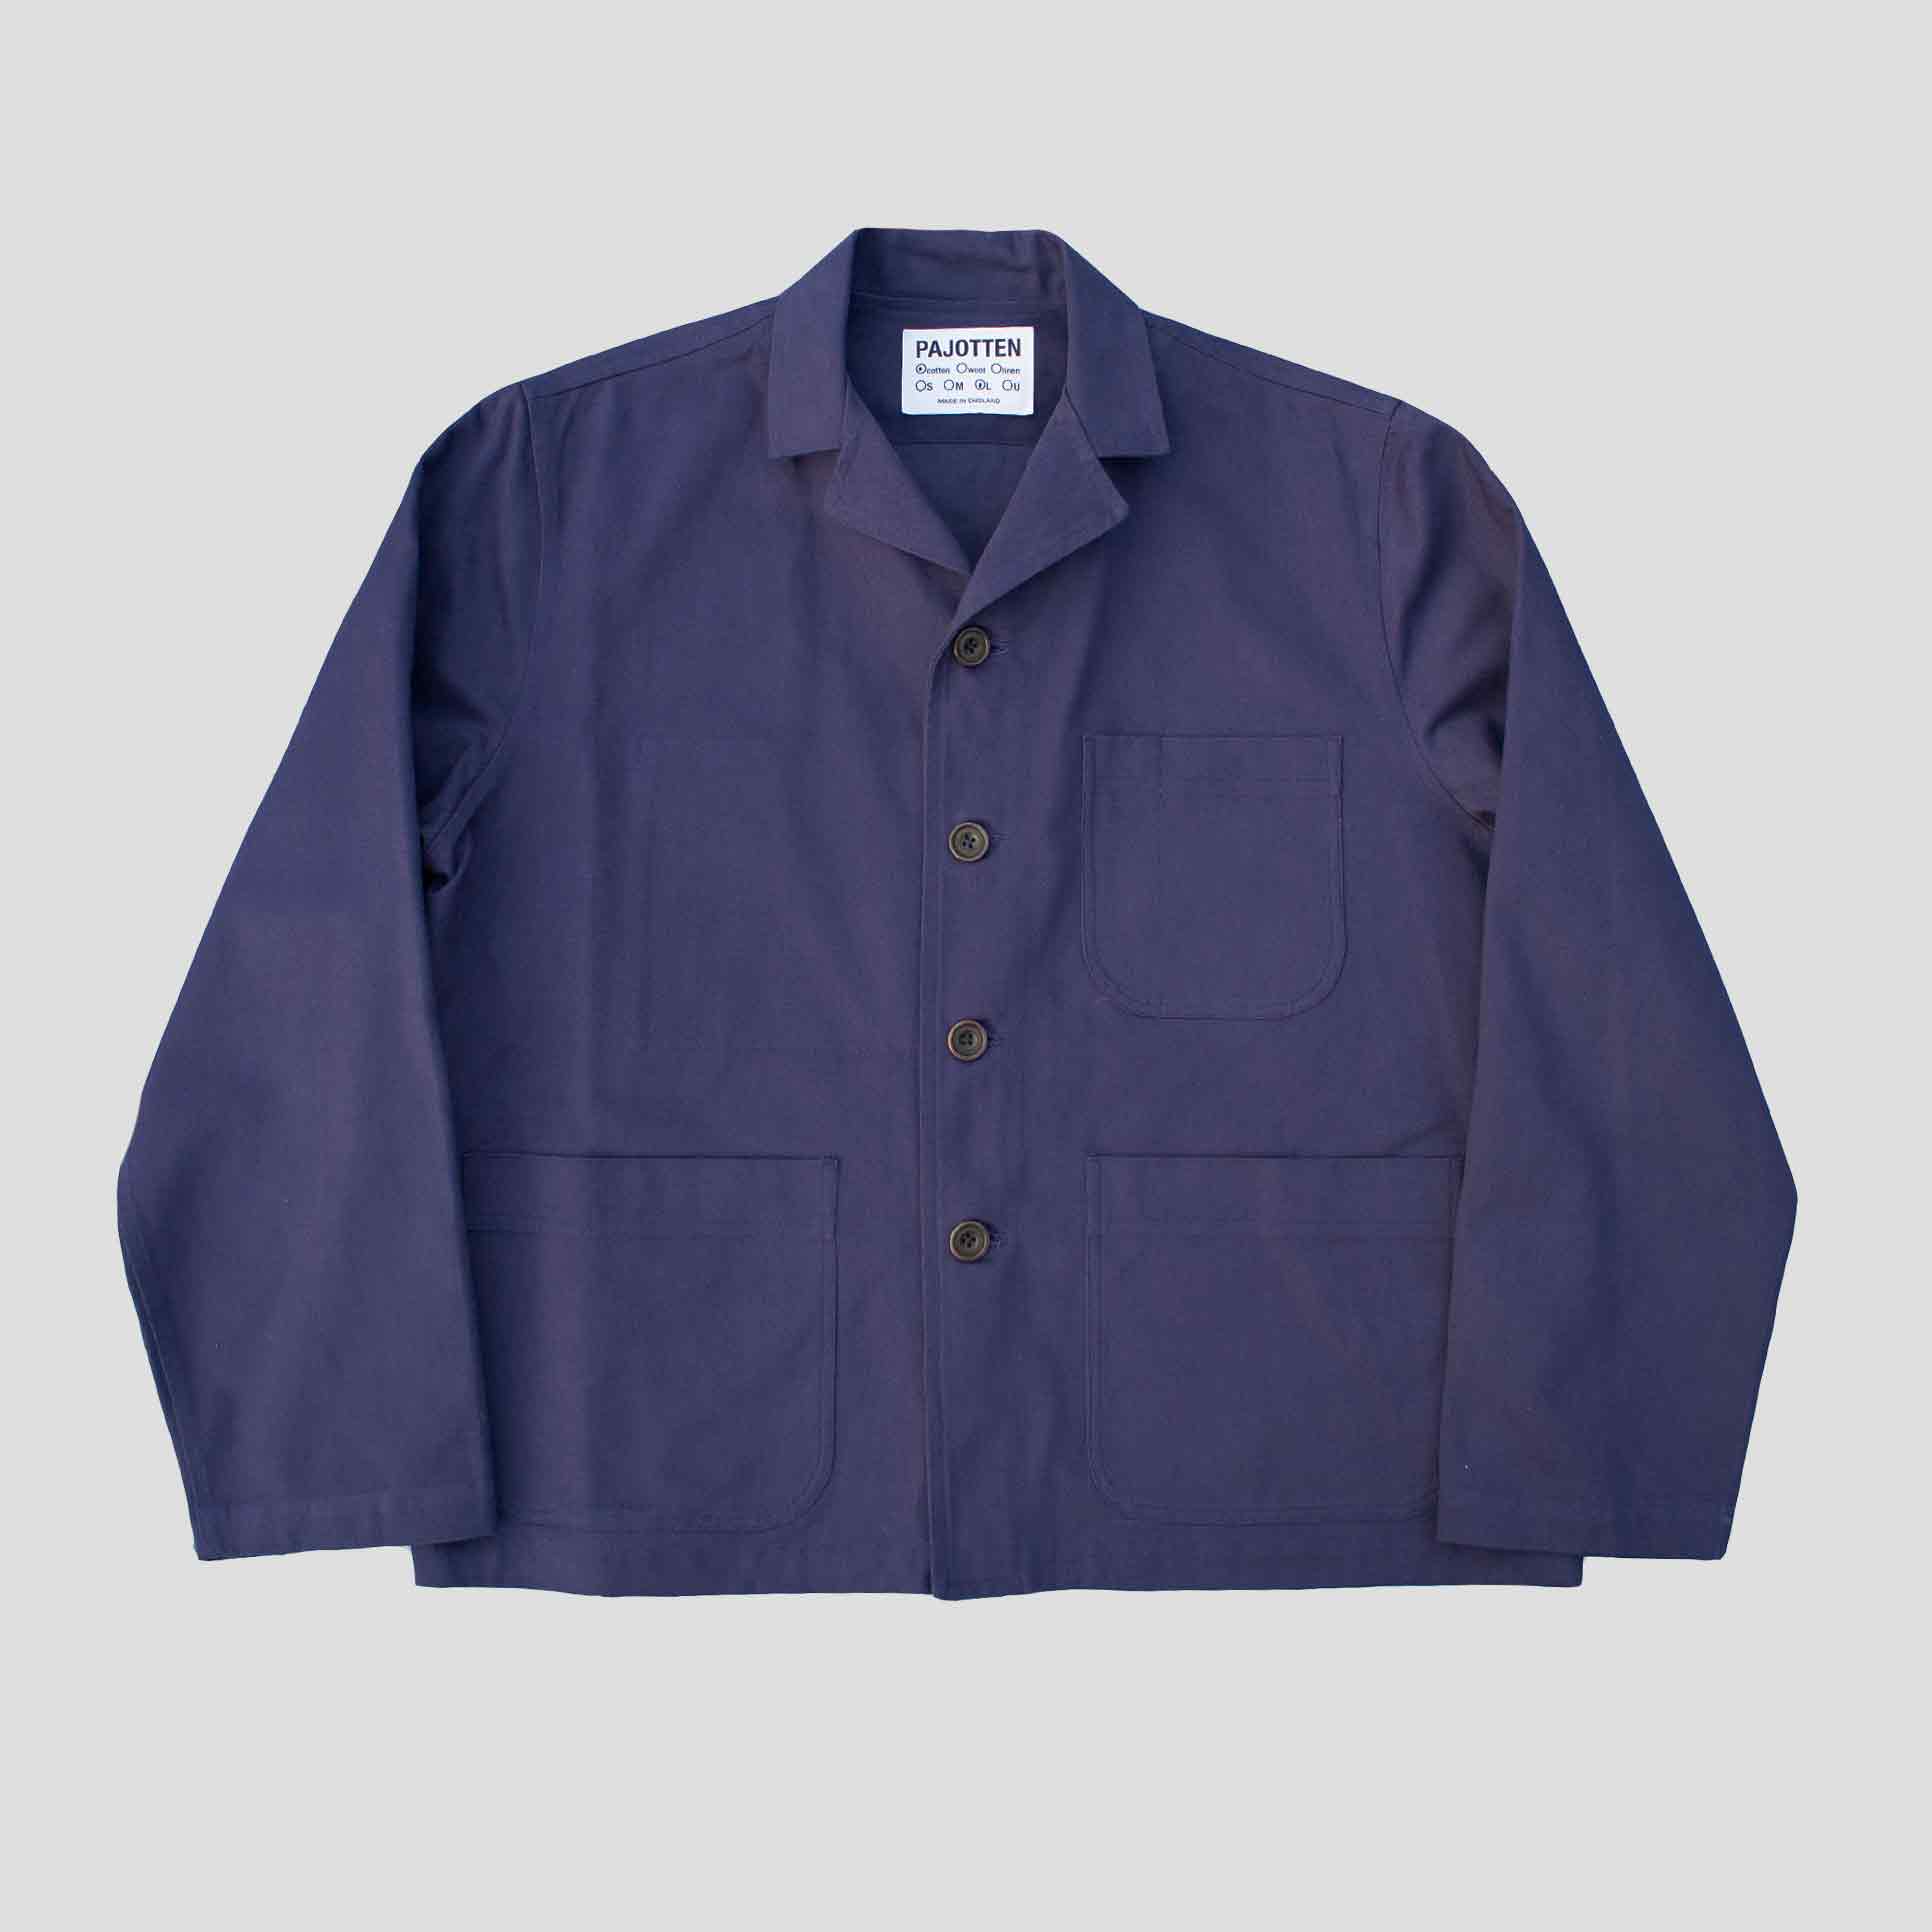 Revere chore jacket in brushed cotton twill -Indigo